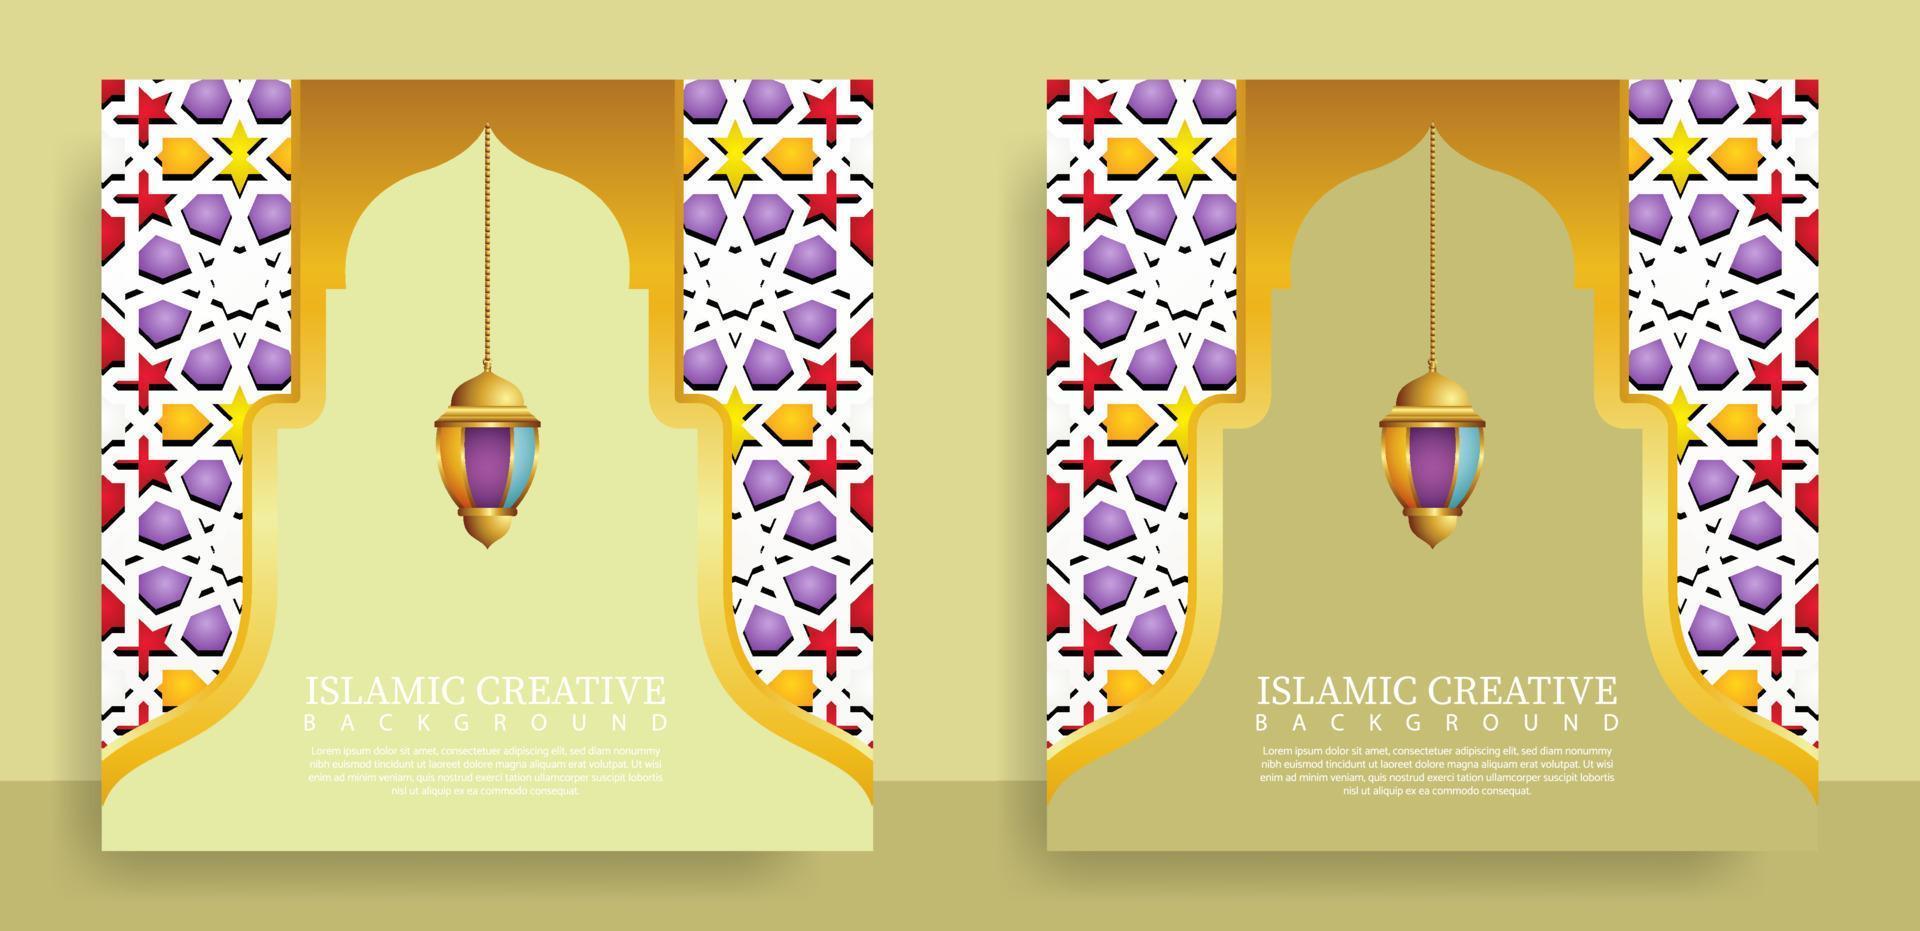 establezca la plantilla de fondo islámico de tarjeta de felicitación con técnica de diseño hecha con textura y detalles coloridos decorativos de adornos de arte islámico mosaico floral ilustración vectorial vector